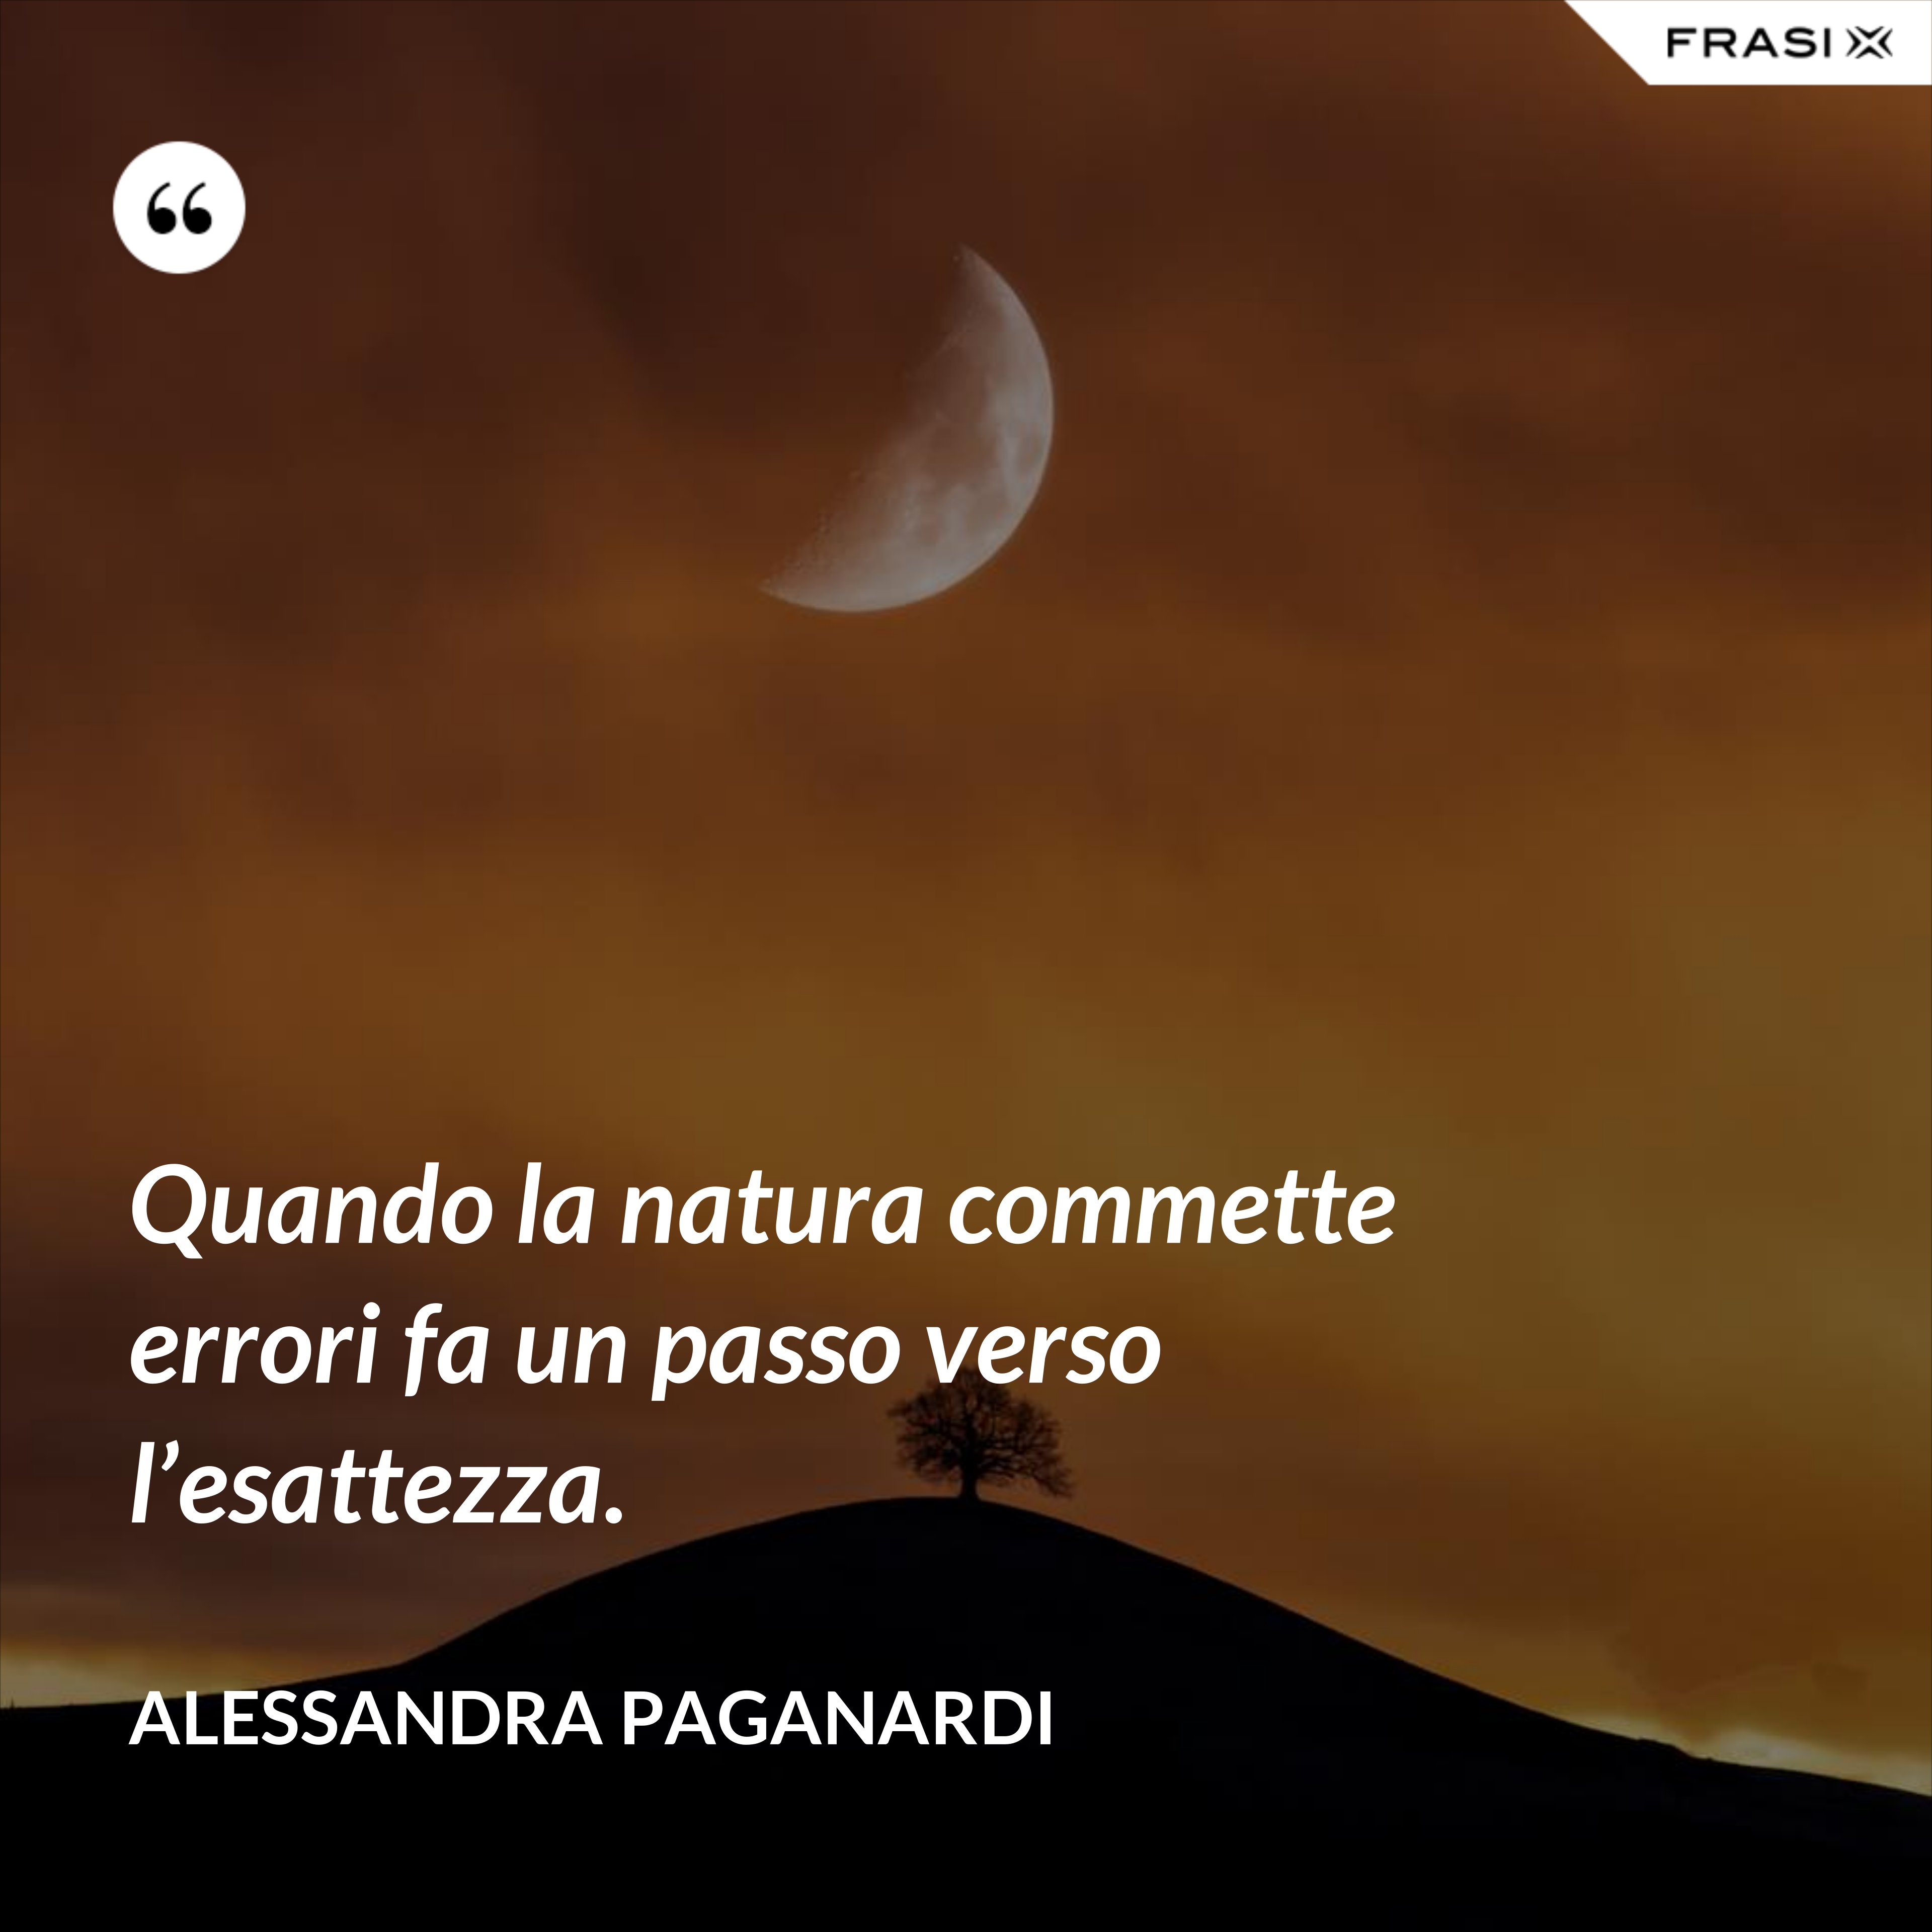 Quando la natura commette errori fa un passo verso l’esattezza. - Alessandra Paganardi